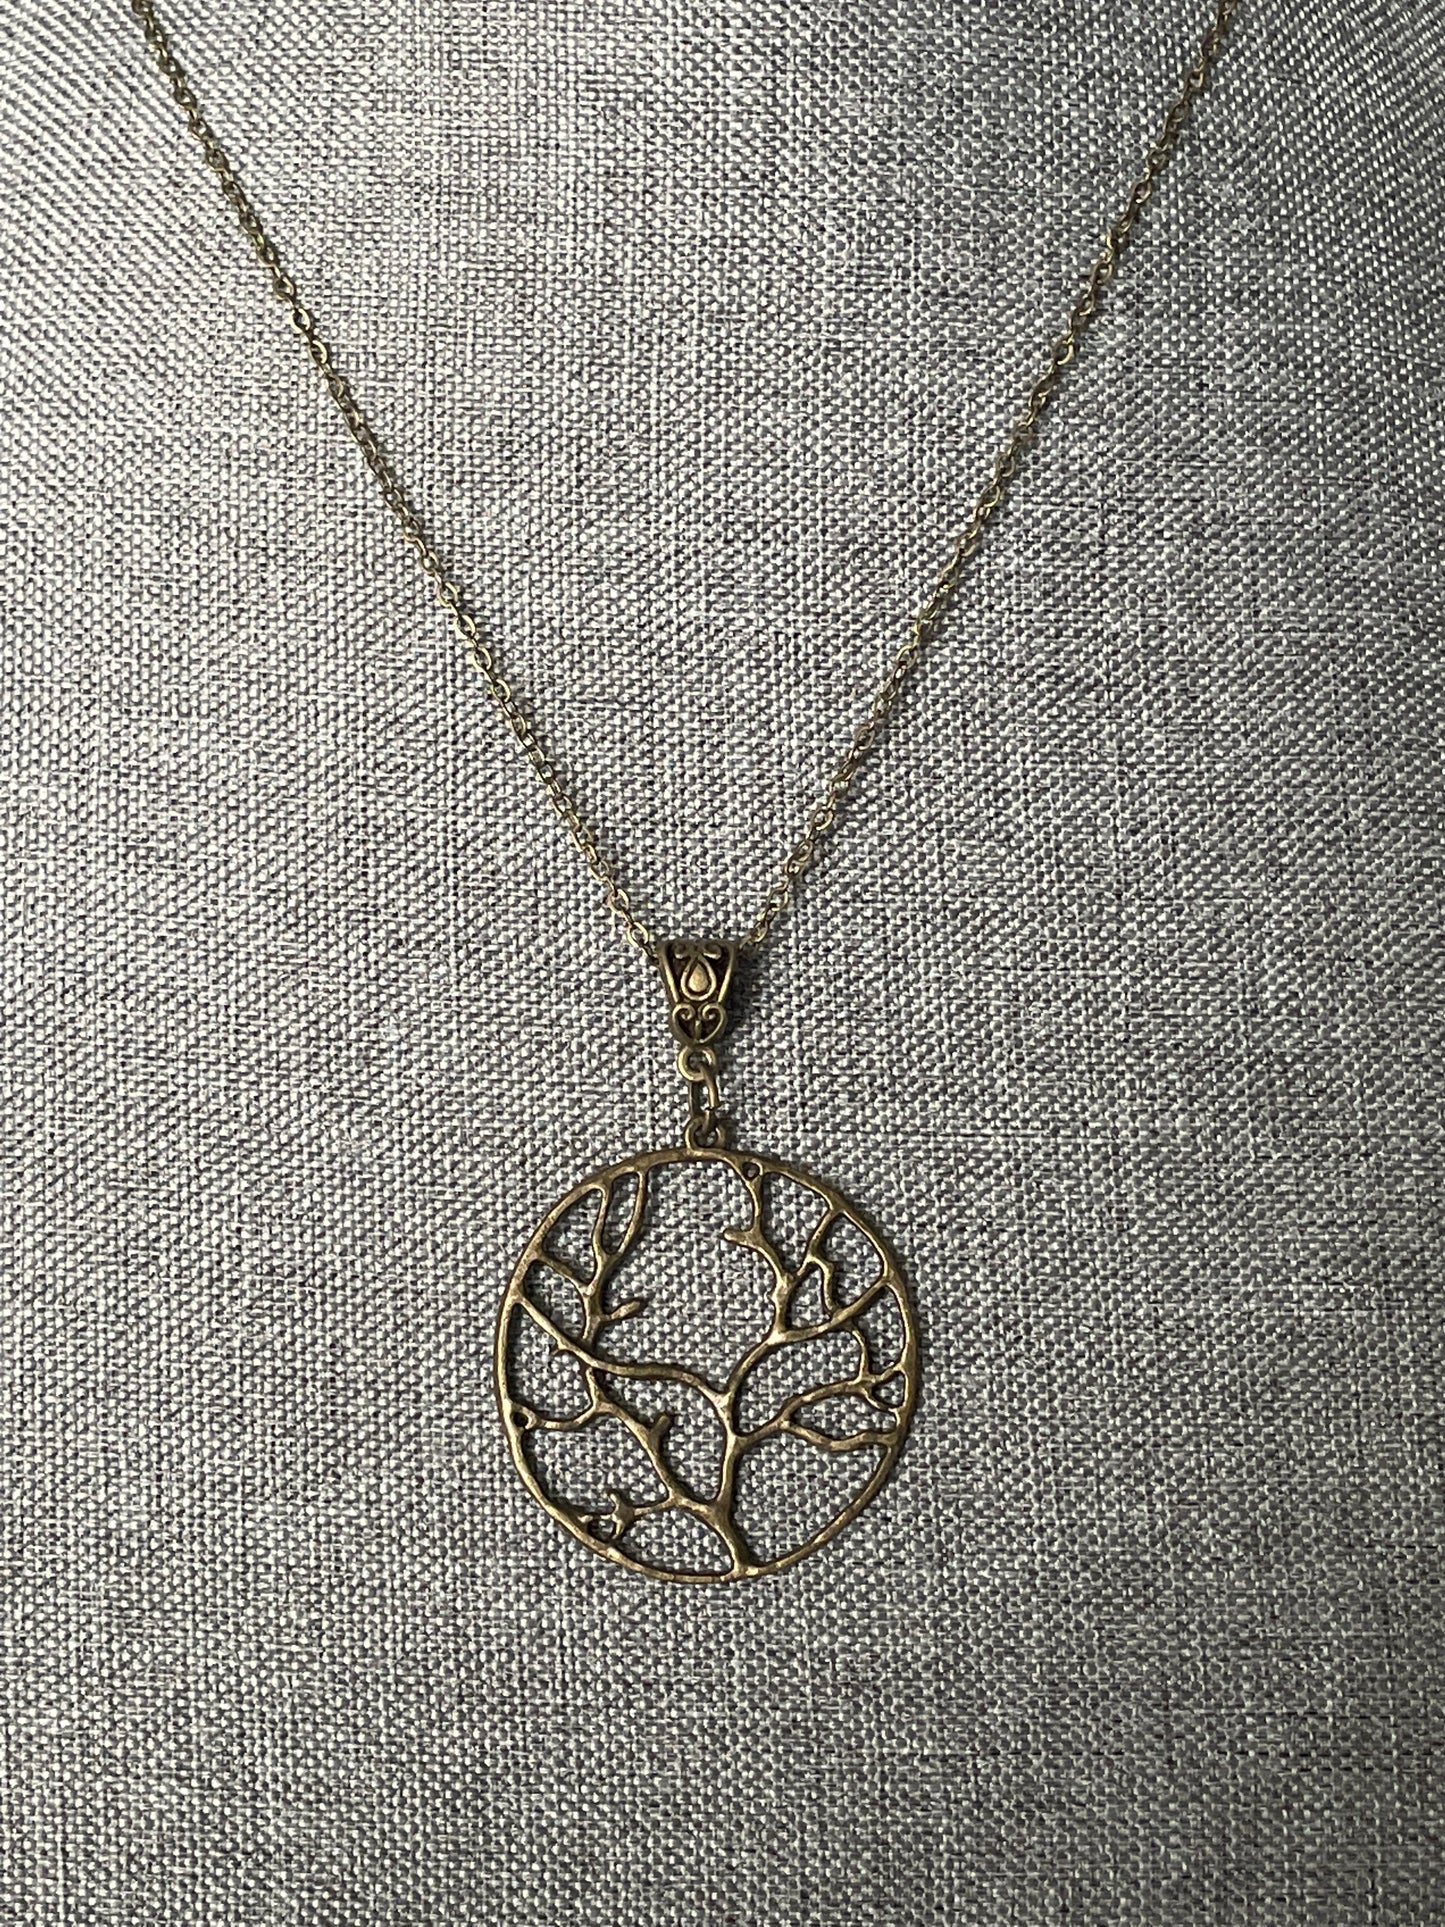 Tree of Life x Bronze Pendant Necklace